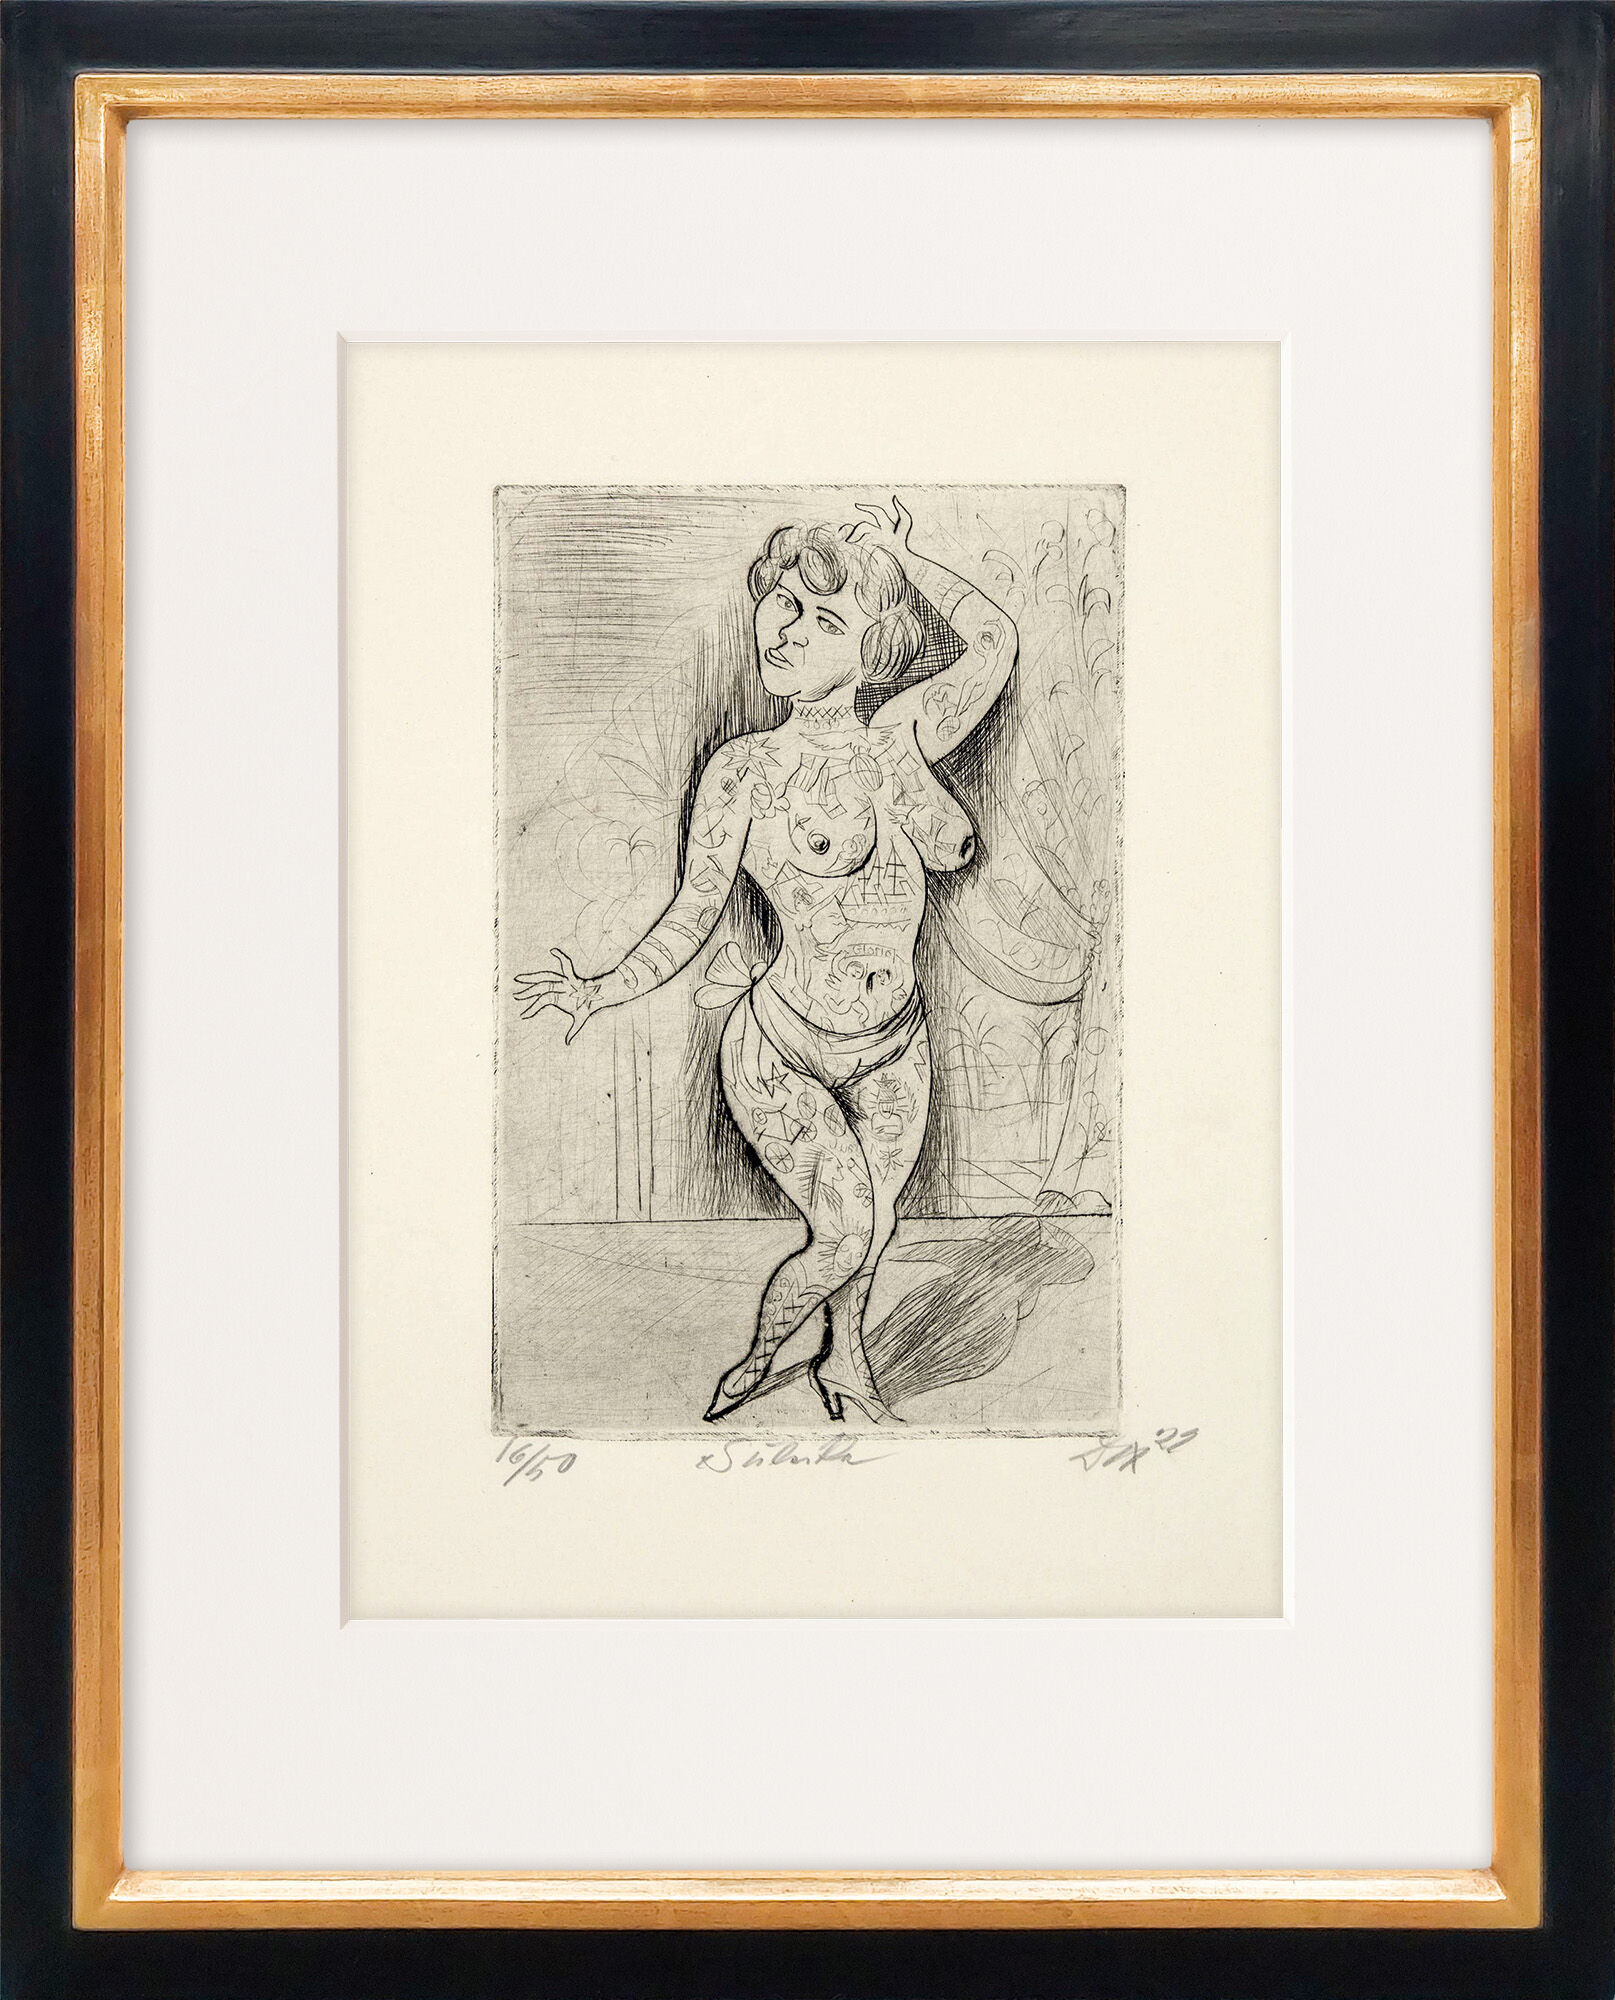 Bild "Maud Arizona (Suleika, das tätowierte Wunder)" (1922) von Otto Dix